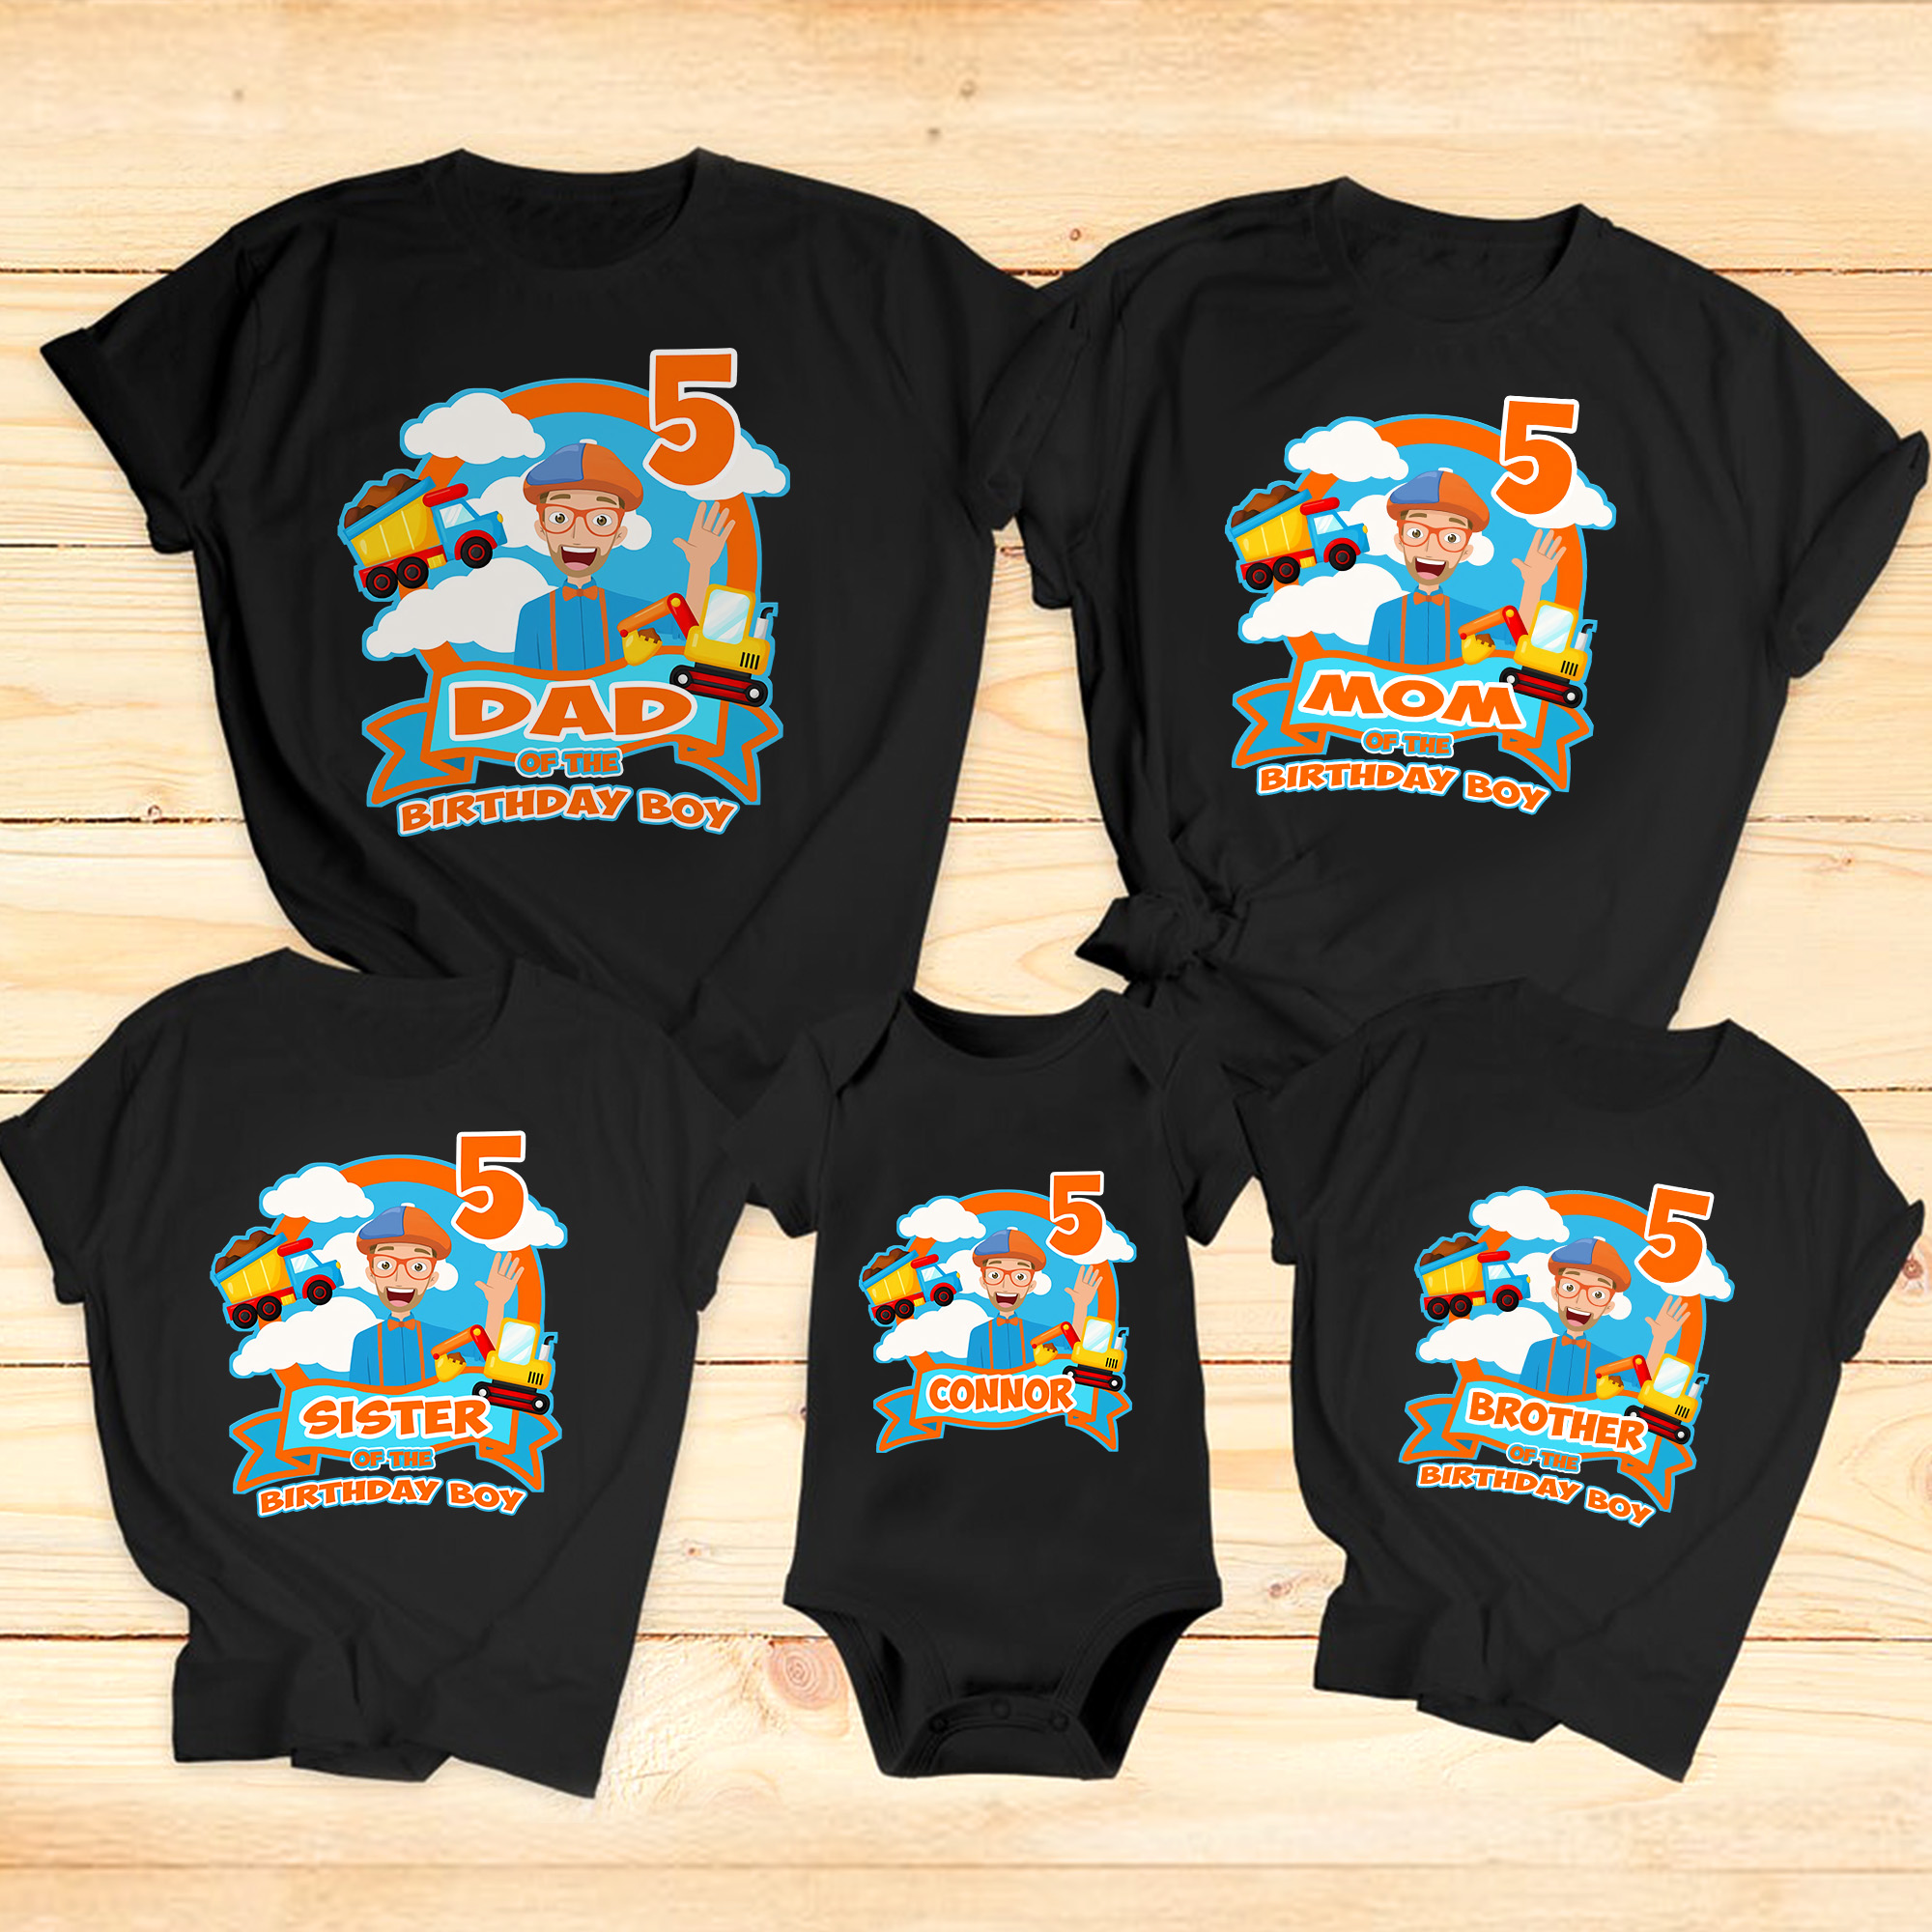 Blippi Birthday Family Shirt, Family Blippi Birthday Shirts, Blippi Birthday Theme Shirts, Blippi Kids Shirt